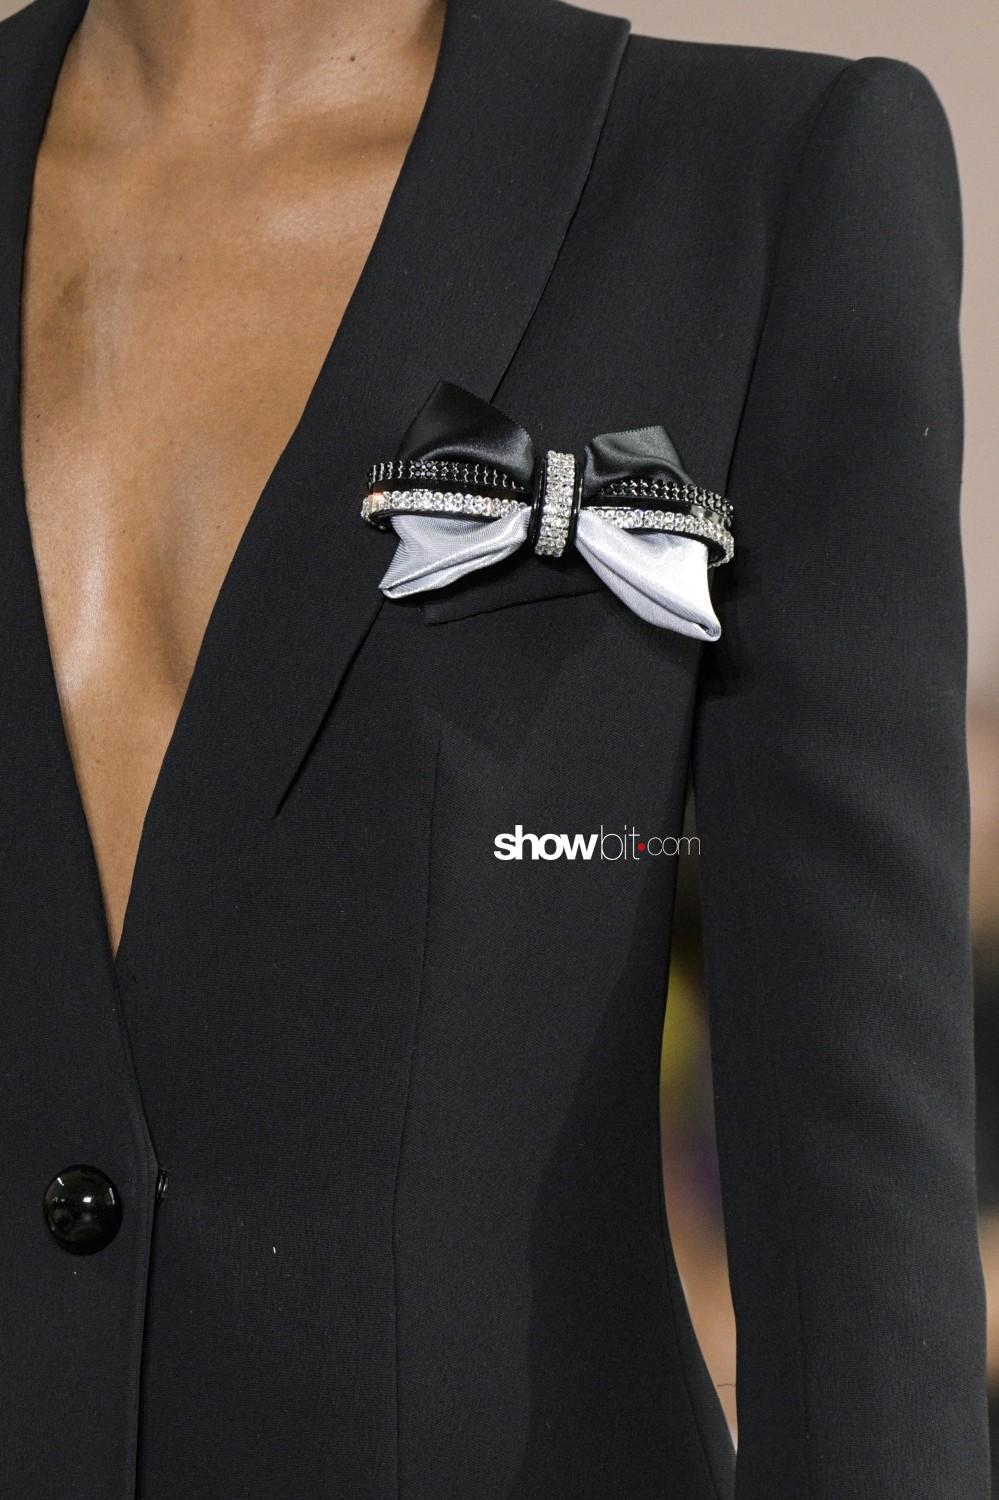 Giorgio Armani Privé close-up Haute Couture Fall Winter 2019 Paris Accessories